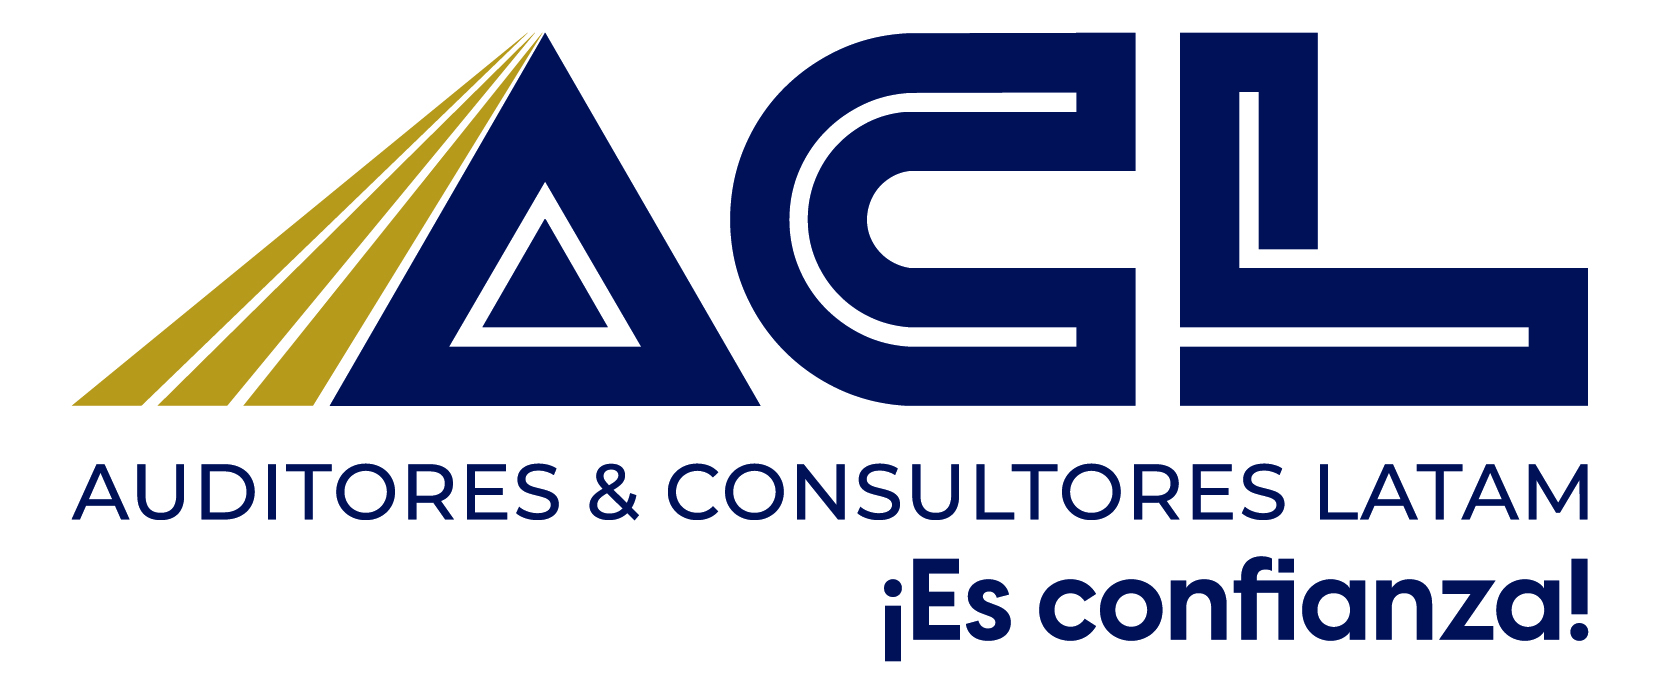 Nuestra Firma - ACL - Servicios de Auditoría Externa